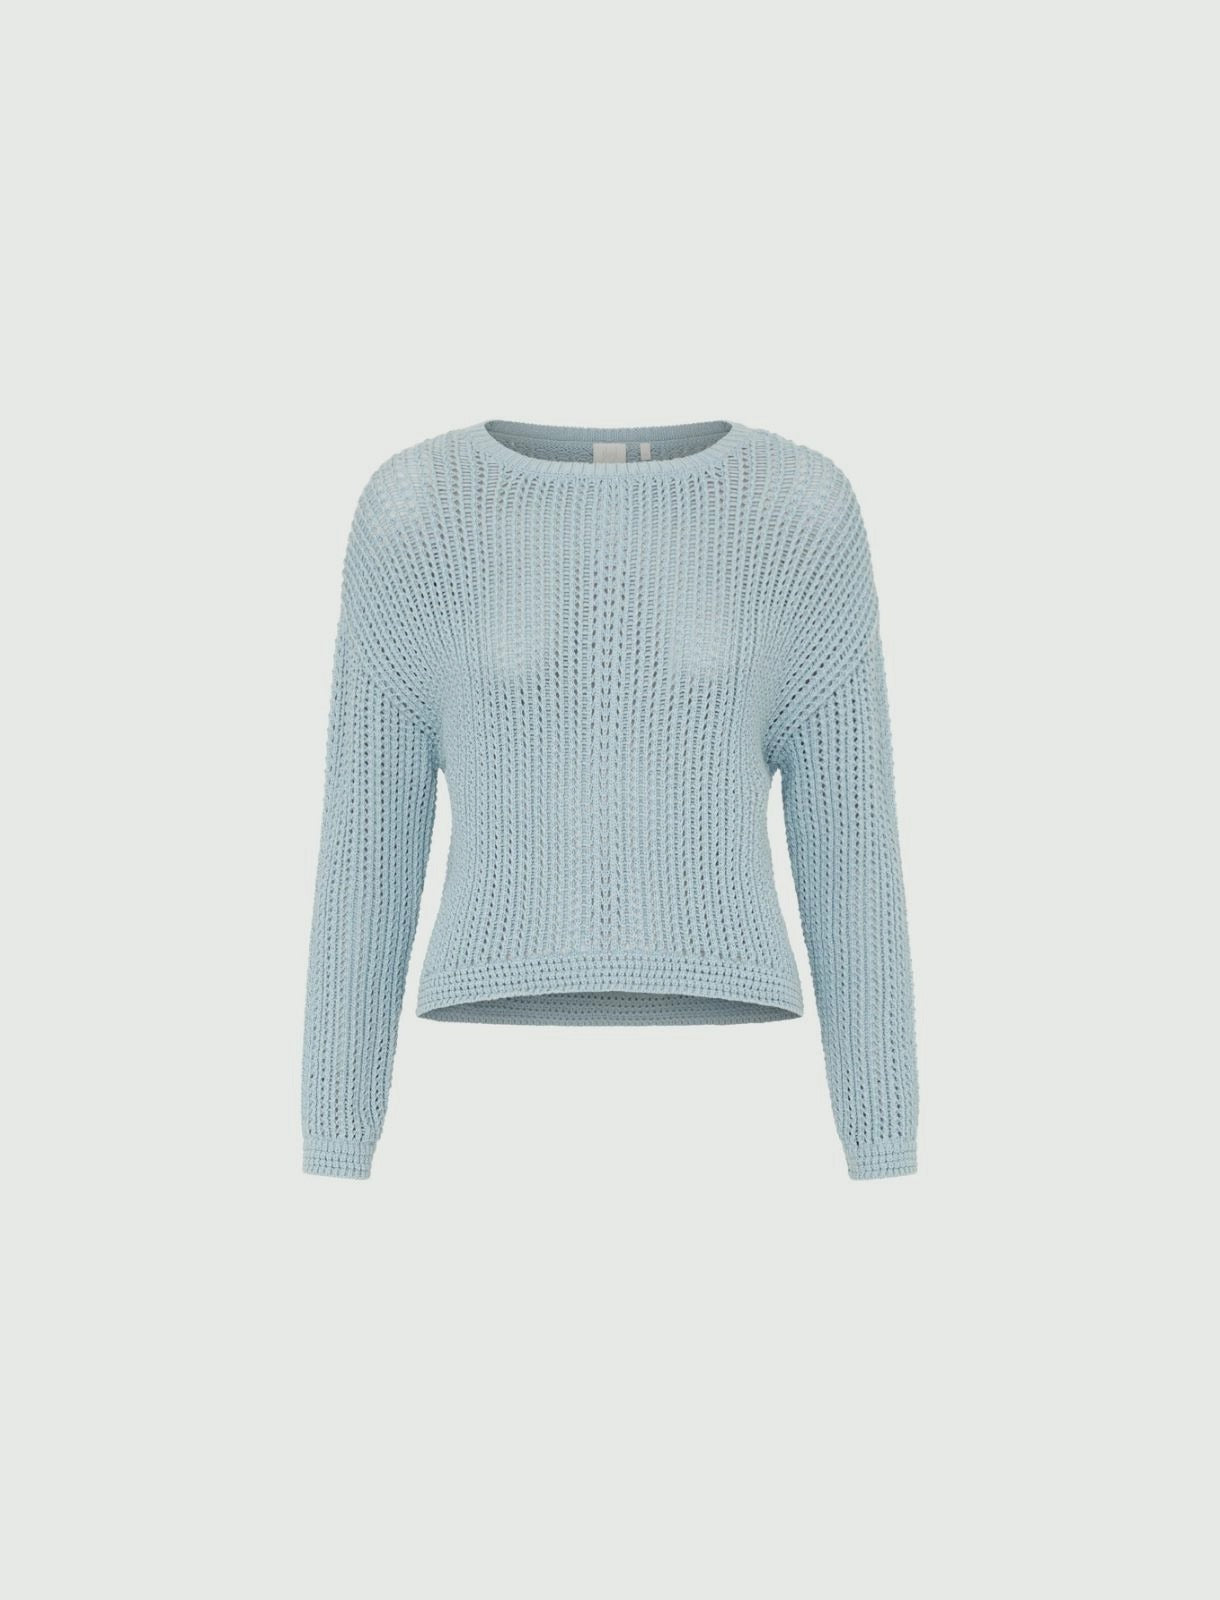 sky blue boxy sweater